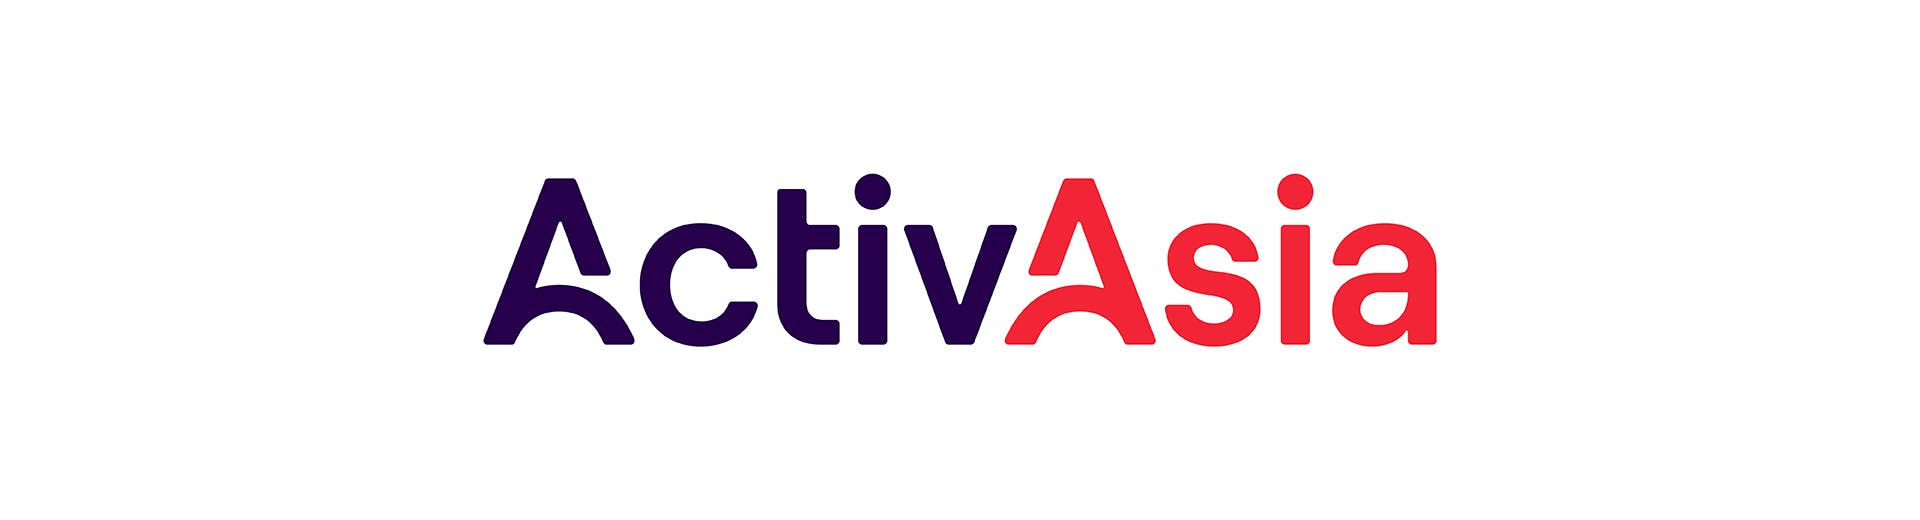 ActivAsia - Coda Builder_Wordmark.jpg